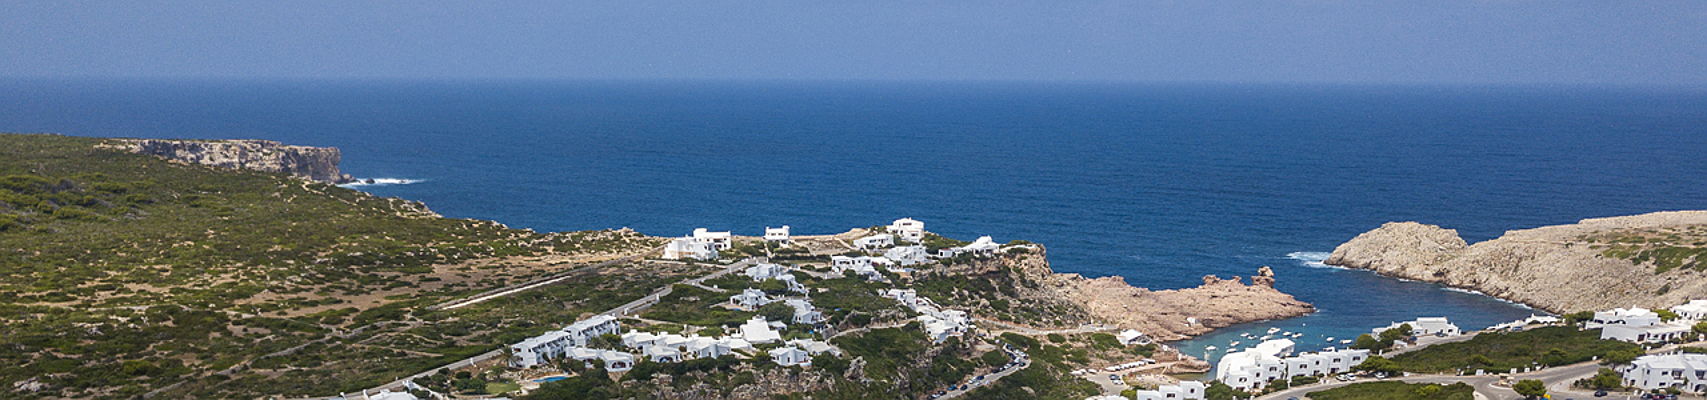  Mahón
- Menorca